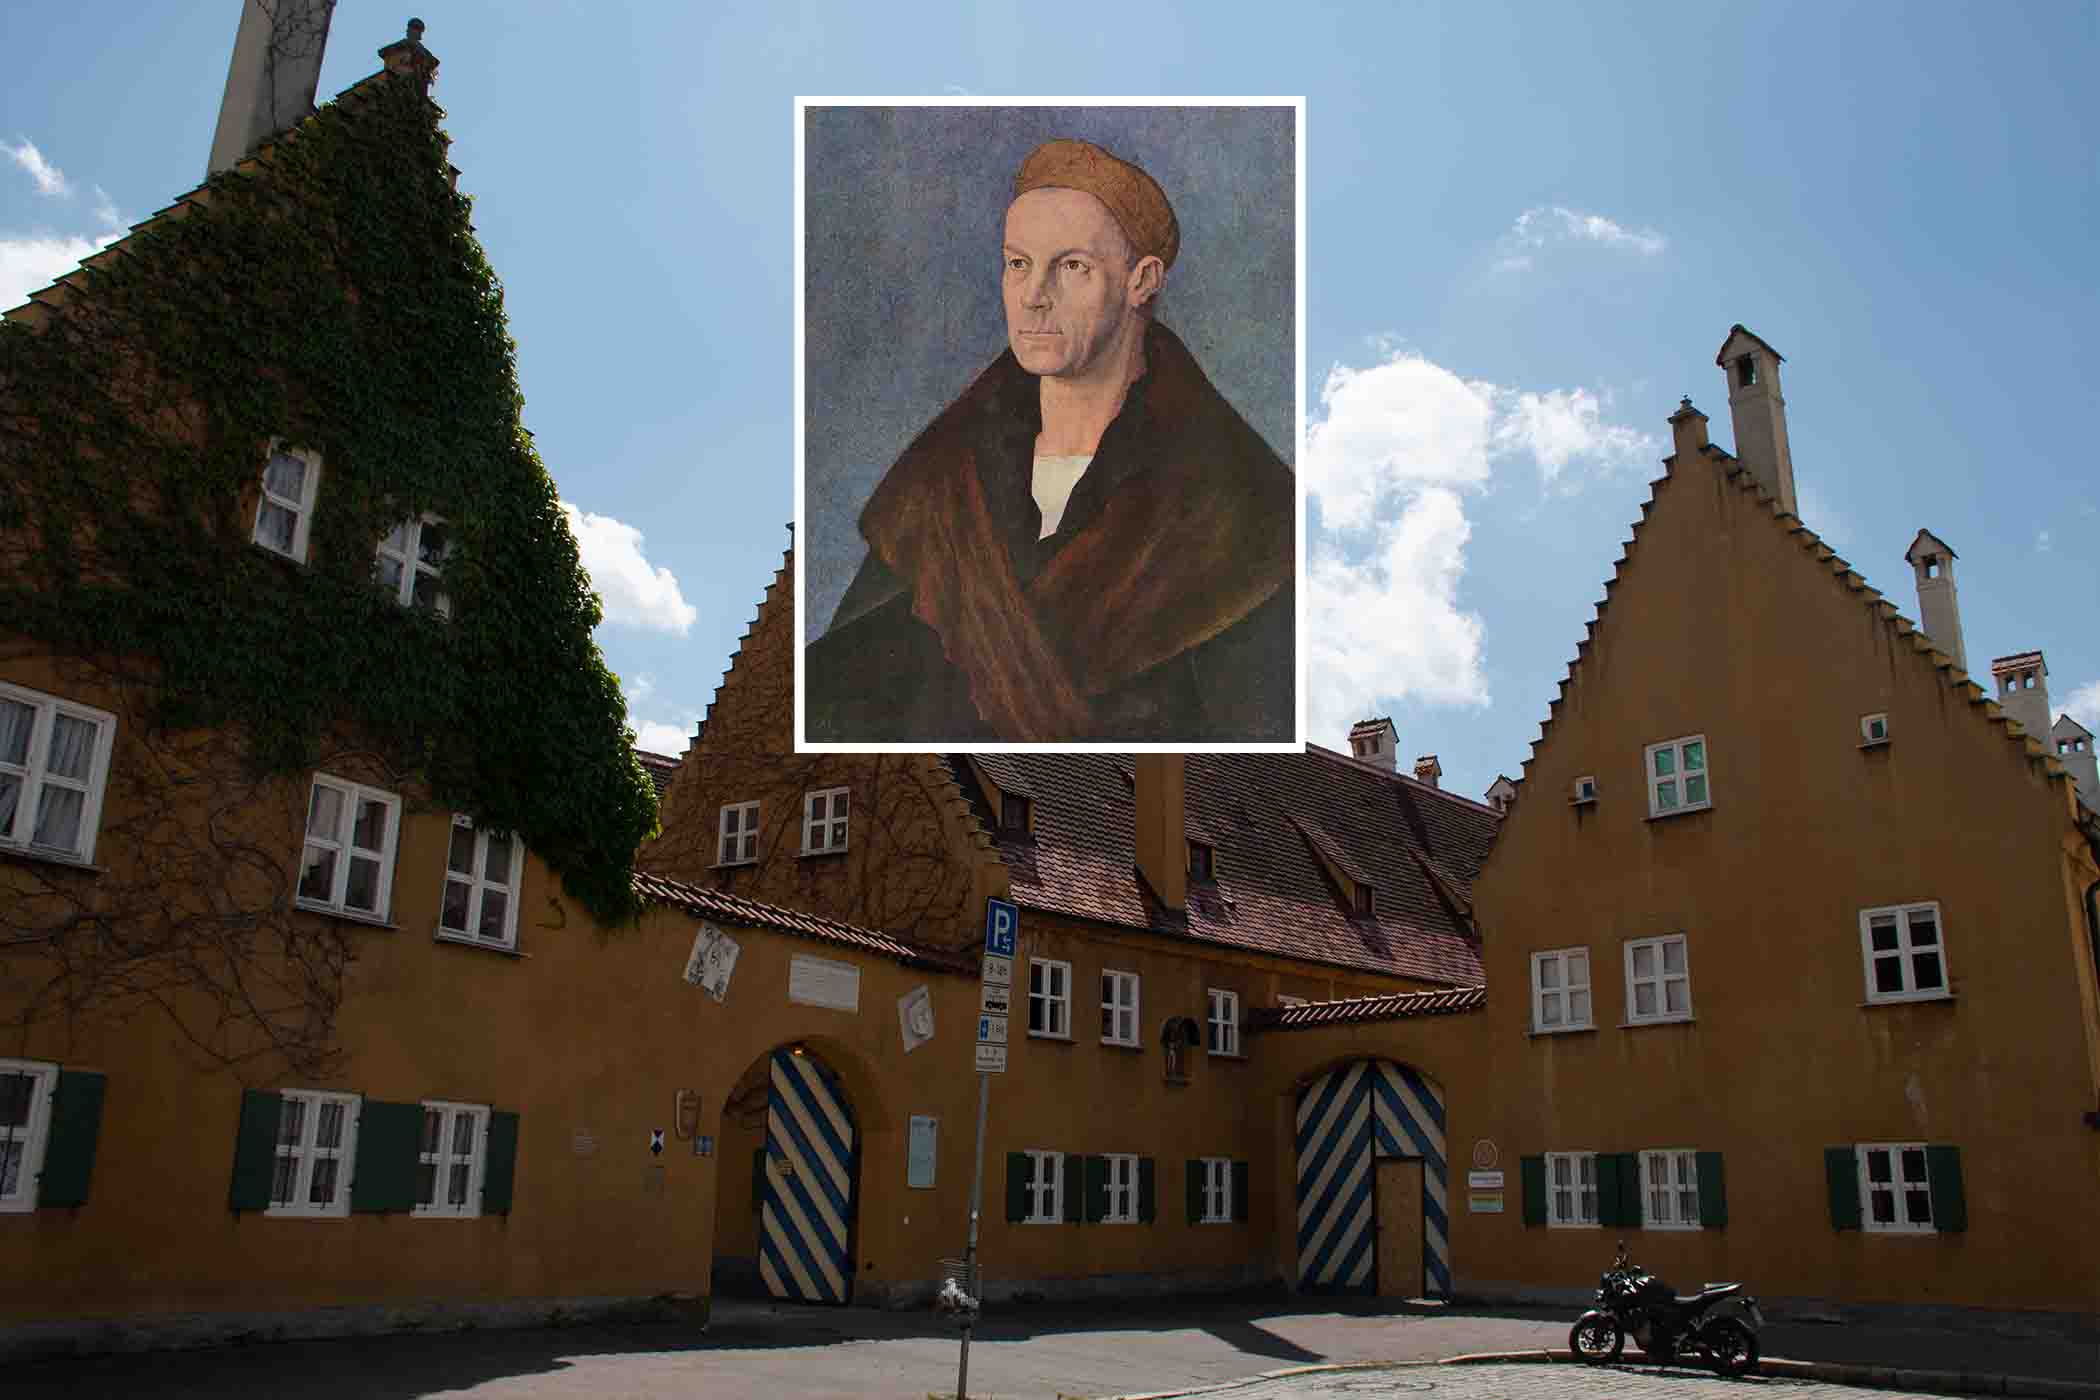 Cánh cổng của khu phố Fuggerei (Ảnh: Anne Czichos/Shutterstock); (Ảnh nhỏ) Bức chân dung “Phú ông Jakob Fugger” của họa sỹ Albrecht Dürer. (Ảnh: Tư liệu công cộng)